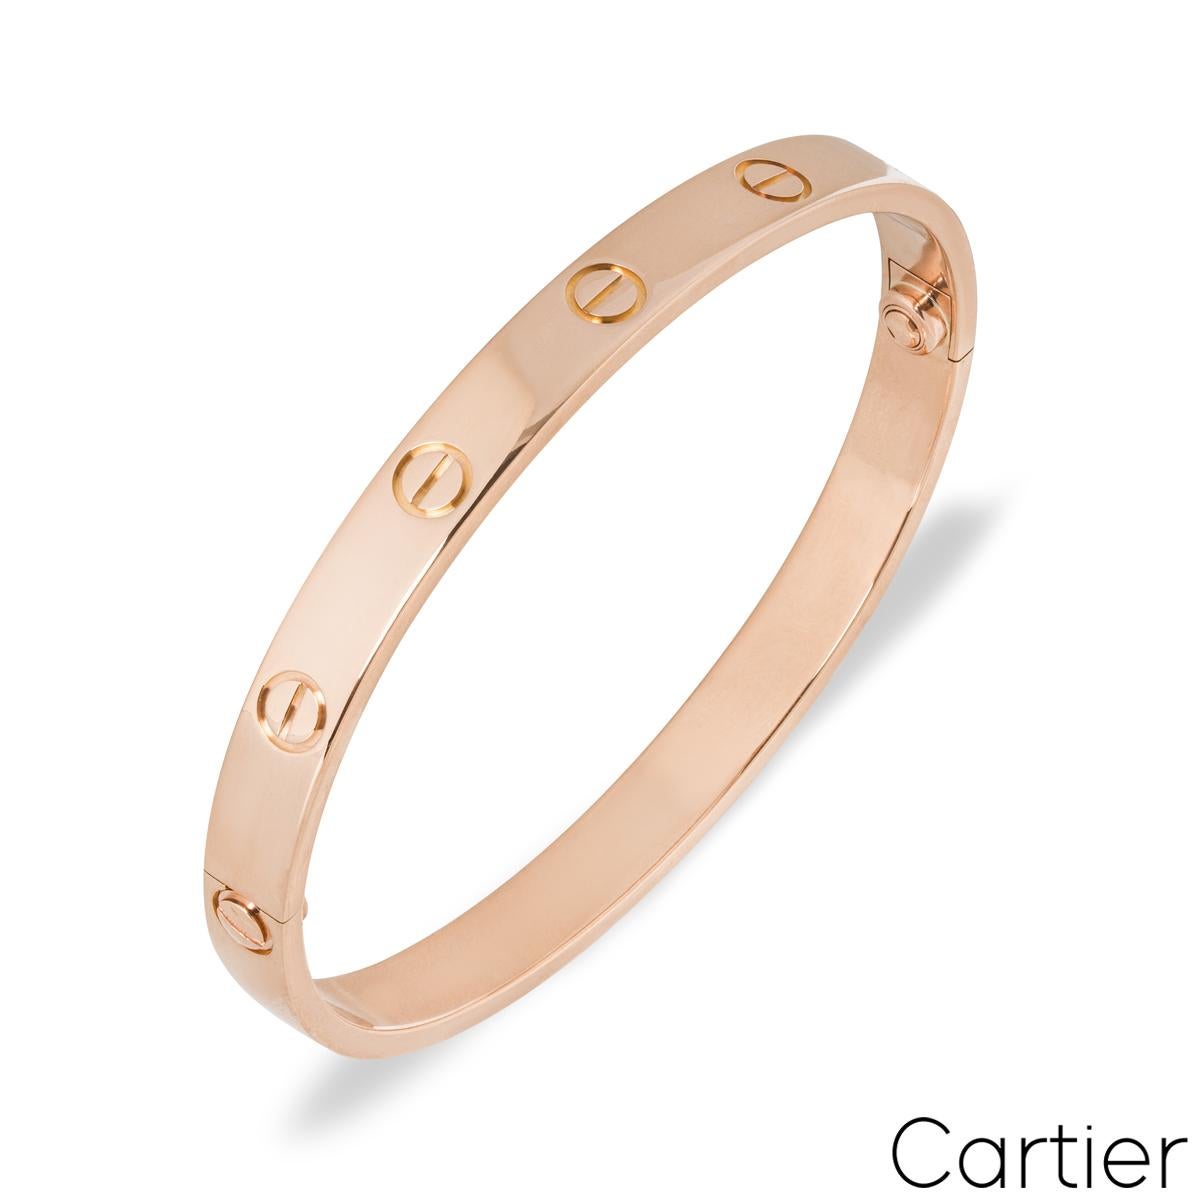 Un bracelet Cartier en or rose 18 carats de la collection Love. Le bracelet comporte les motifs emblématiques de la vis sur le pourtour extérieur. Le bracelet, de taille 20, est doté du nouveau système de vis et pèse 34,20 grammes.

Le bracelet est